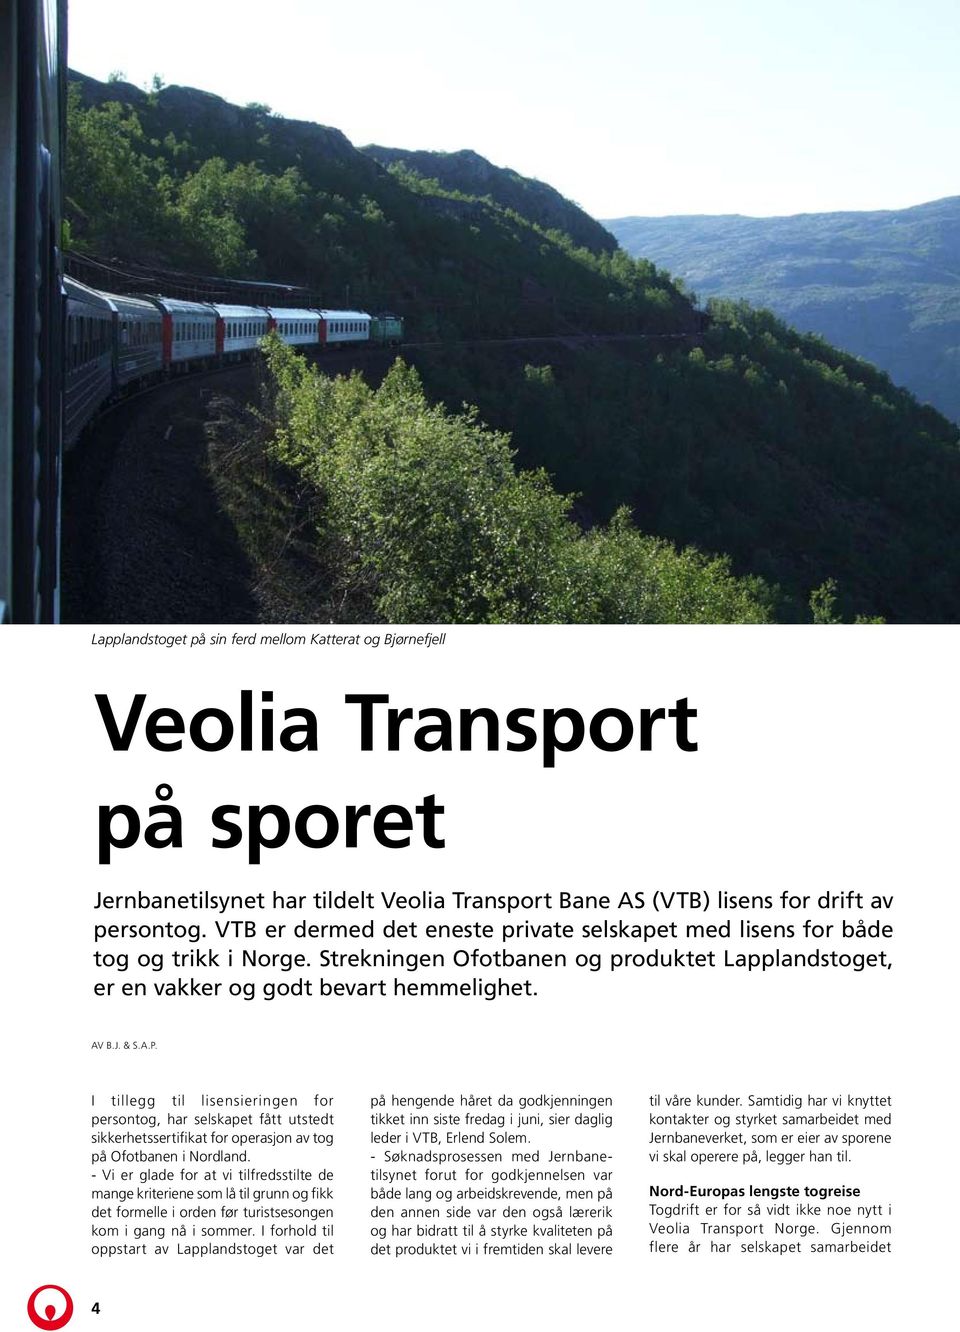 I tillegg til lisensieringen for persontog, har selskapet fått utstedt sikkerhetssertifikat for operasjon av tog på Ofotbanen i Nordland.